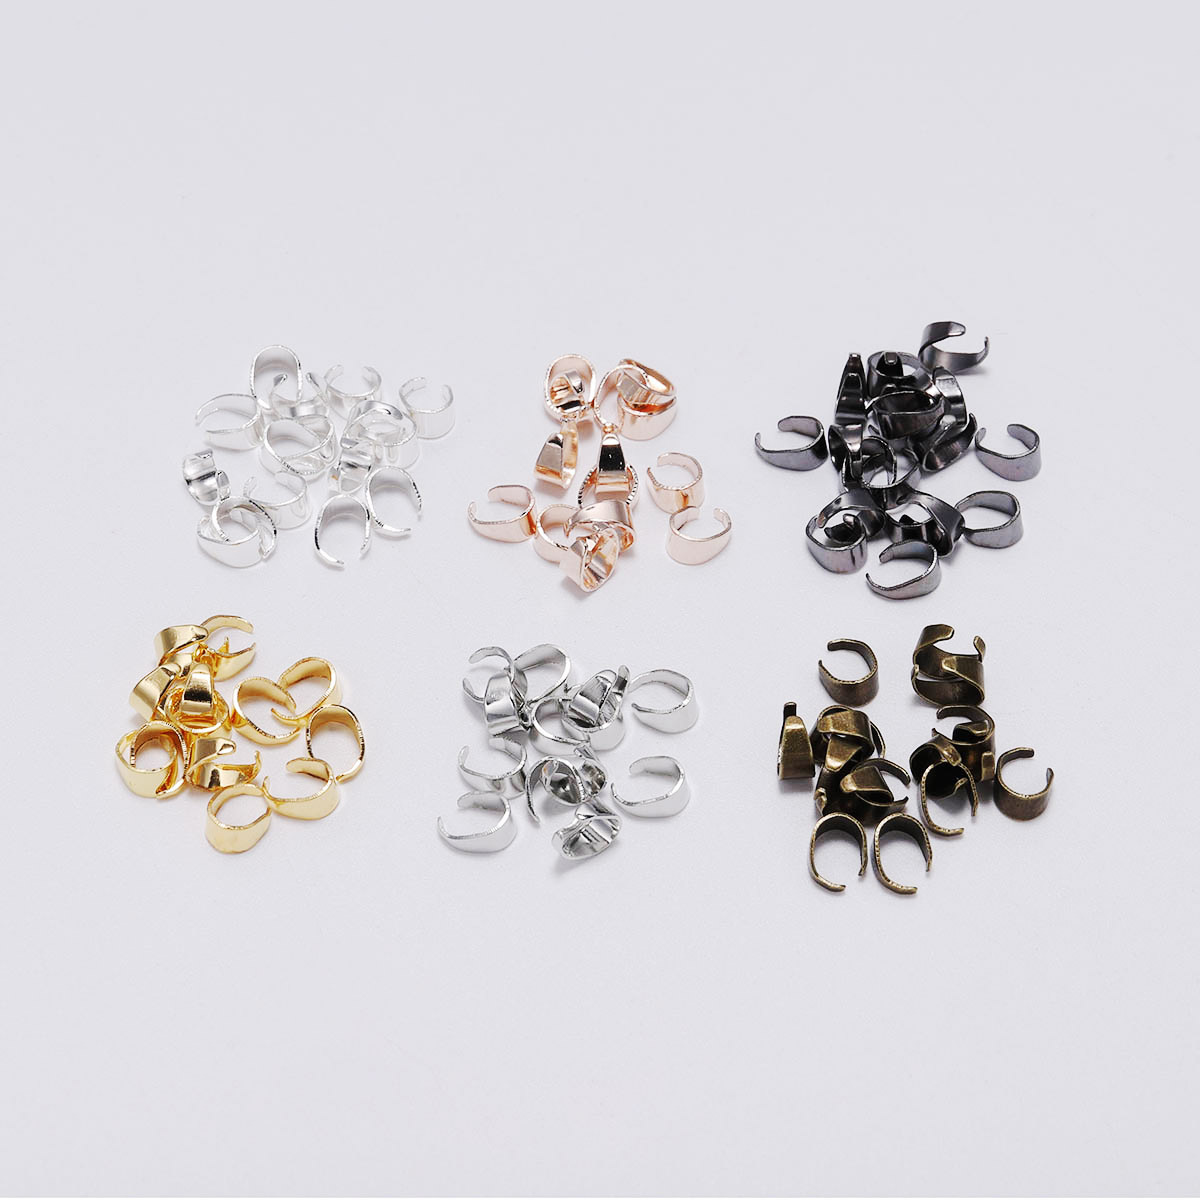 50pcs/lot Copper Pendant Pinch Bails Connectors for DIY Jewelry